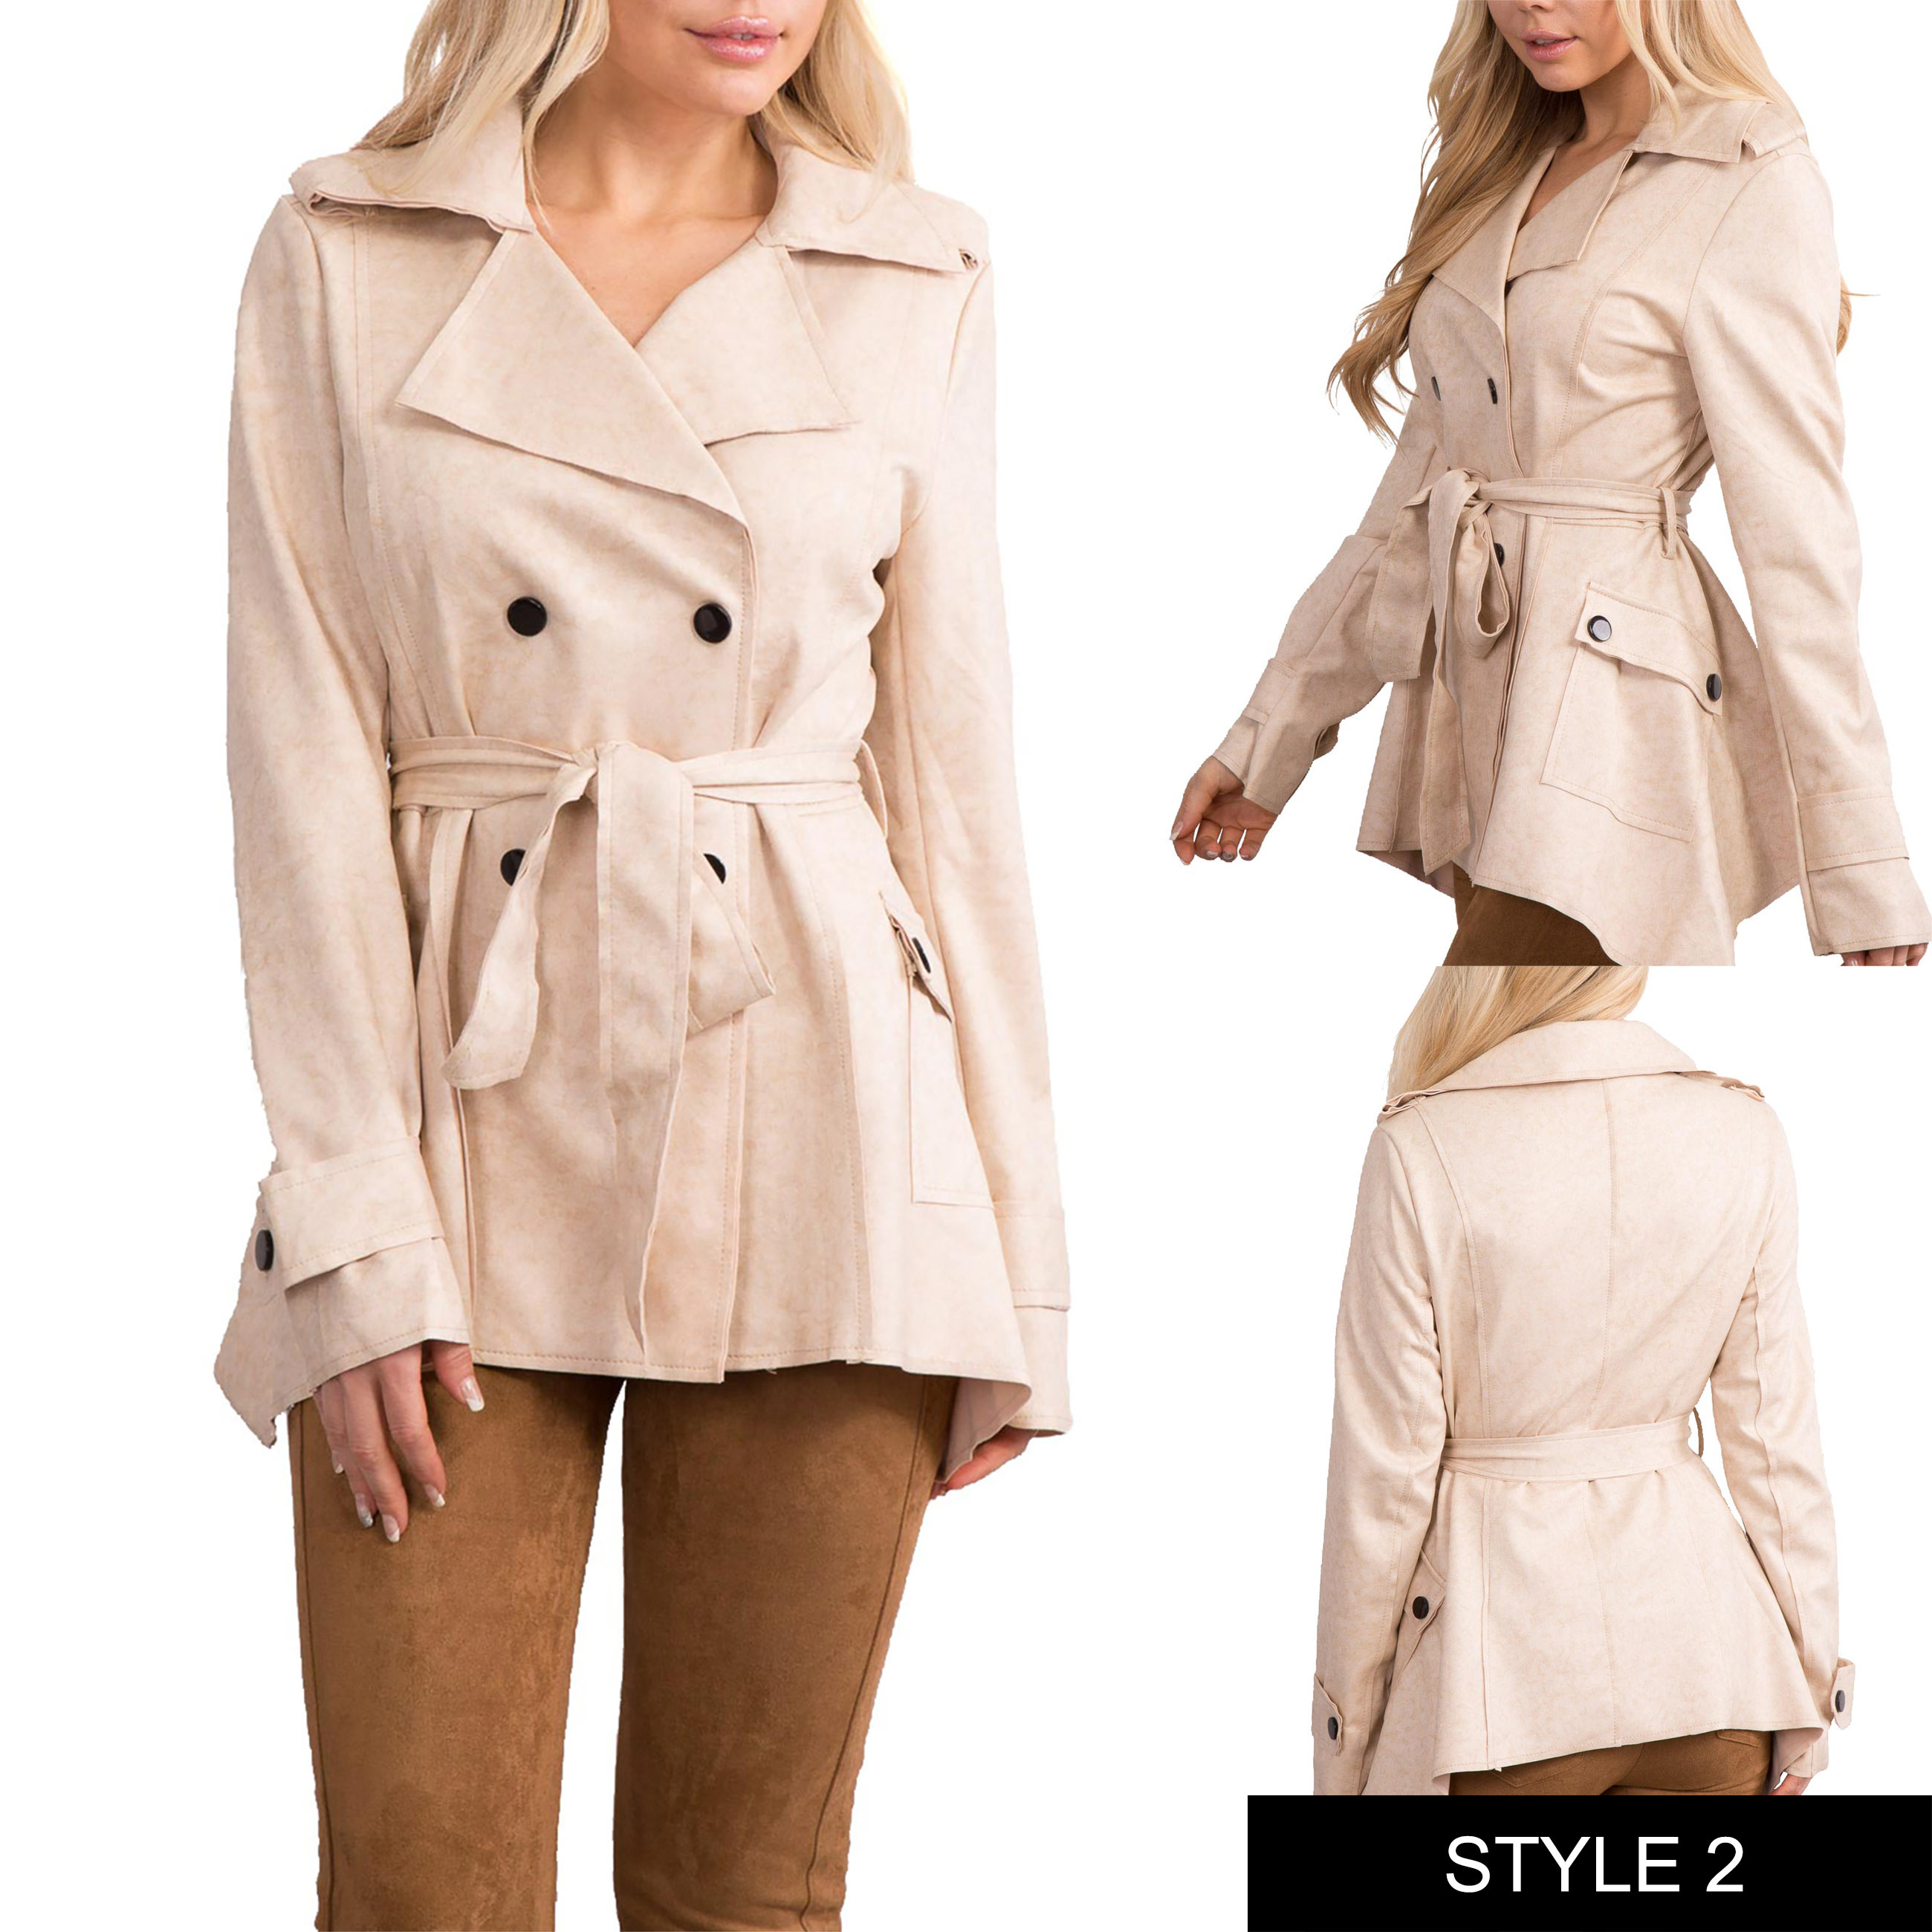 Ladies Women Winter Office Coat Trench Jacket Blazer Coat Outwear Size 6 8 10 14